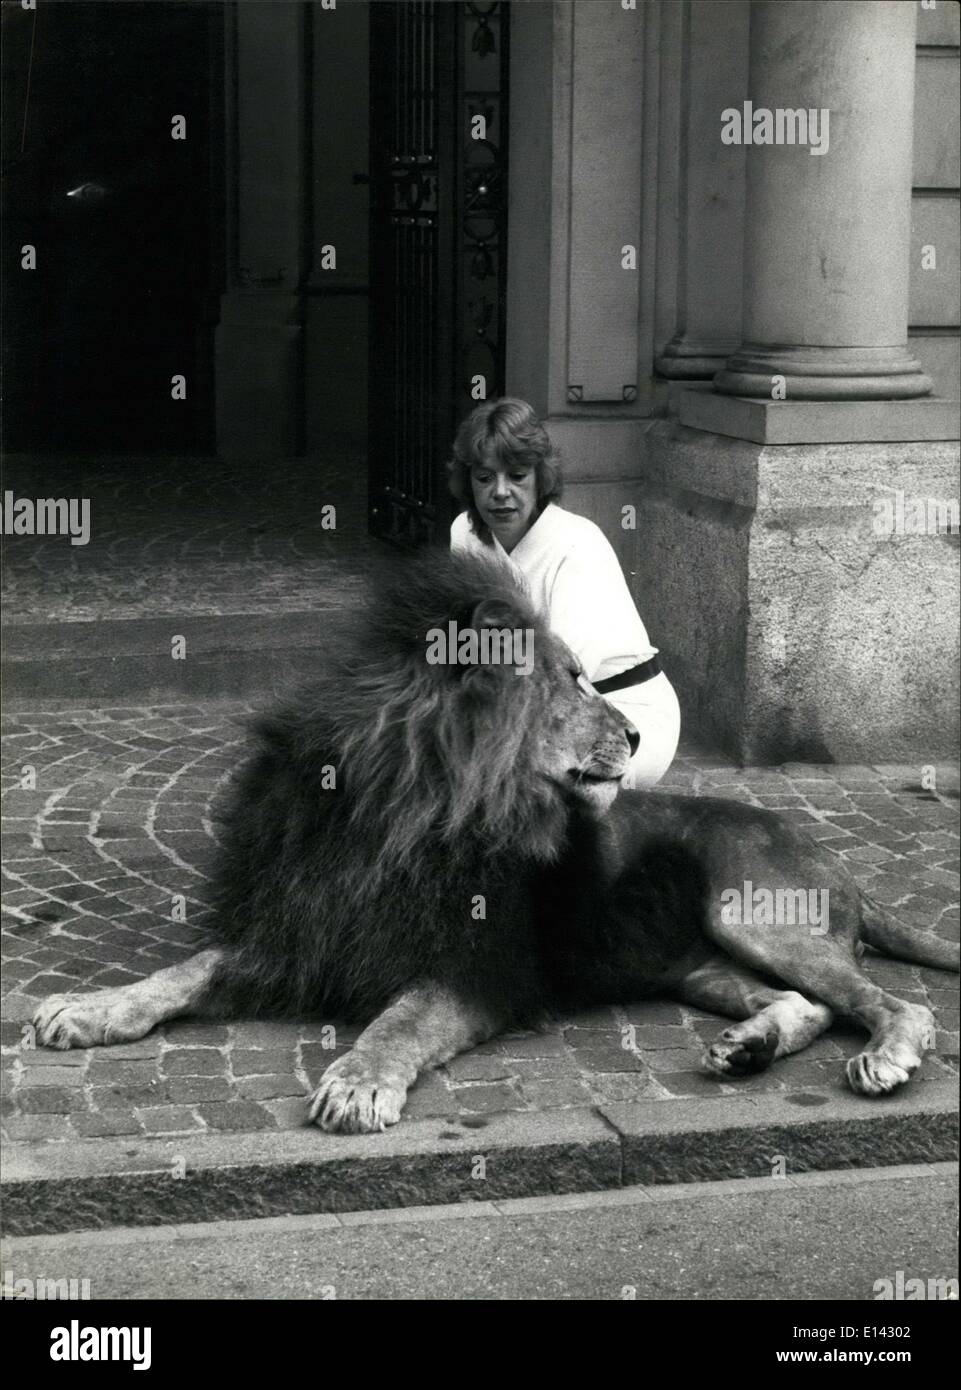 31. März 2012 - Angriffe Lion Modell. Um zu verdeutlichen, ein Löwe mit einer Frau zeigt, die Flagge der Schweizer Stadt Frauenfeld, war Fotomodell diesem Tag von einem Löwen angegriffen und schwer verletzt. Unser Bild zeigt die Foto-Session, kurz bevor der Unfall passierte. Keystone Schweiz 31.10.85 Stockfoto